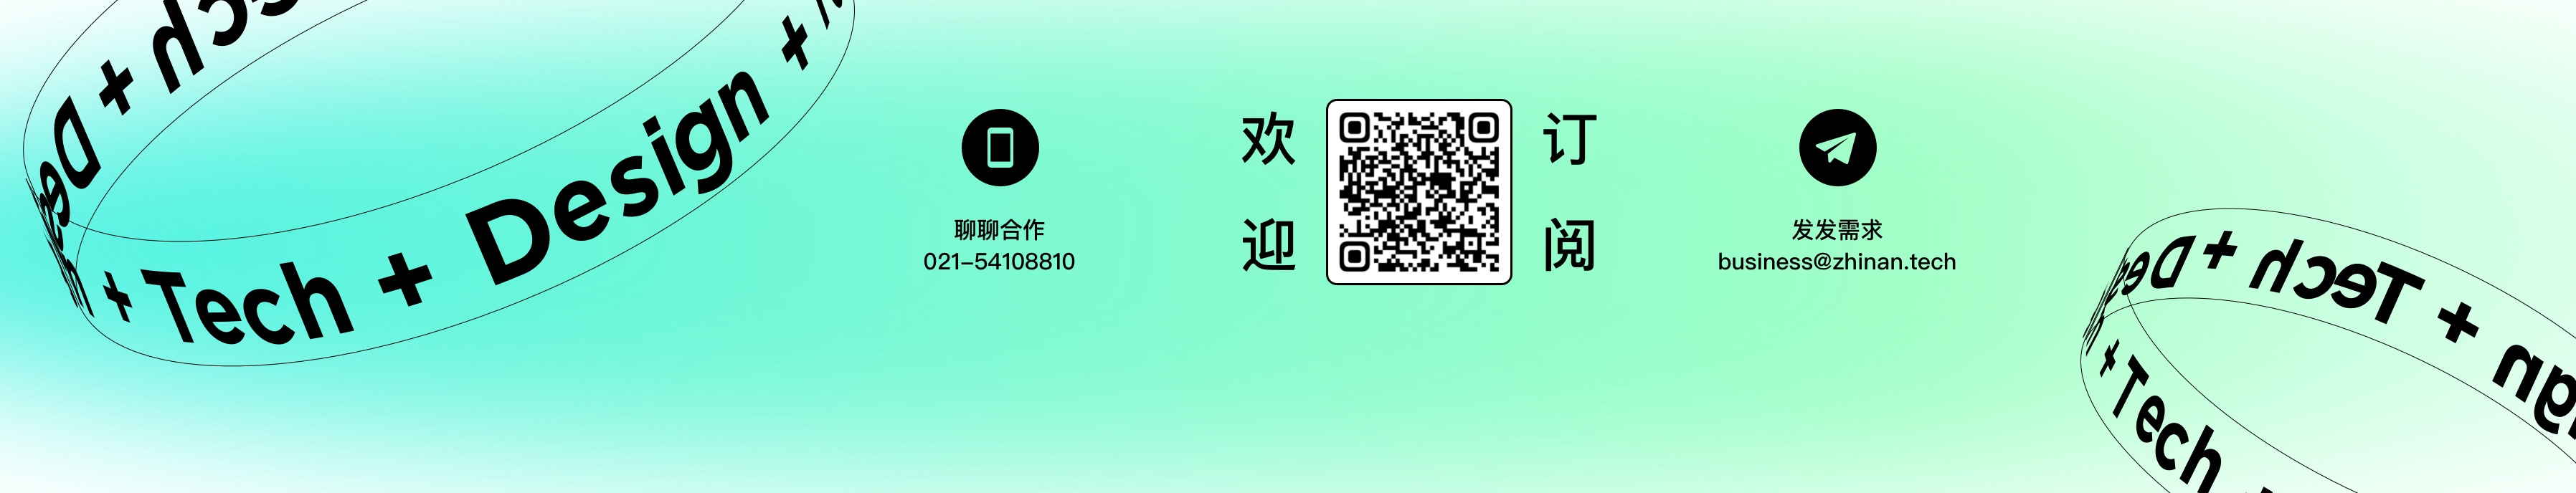 Zhinan Tech's profile banner